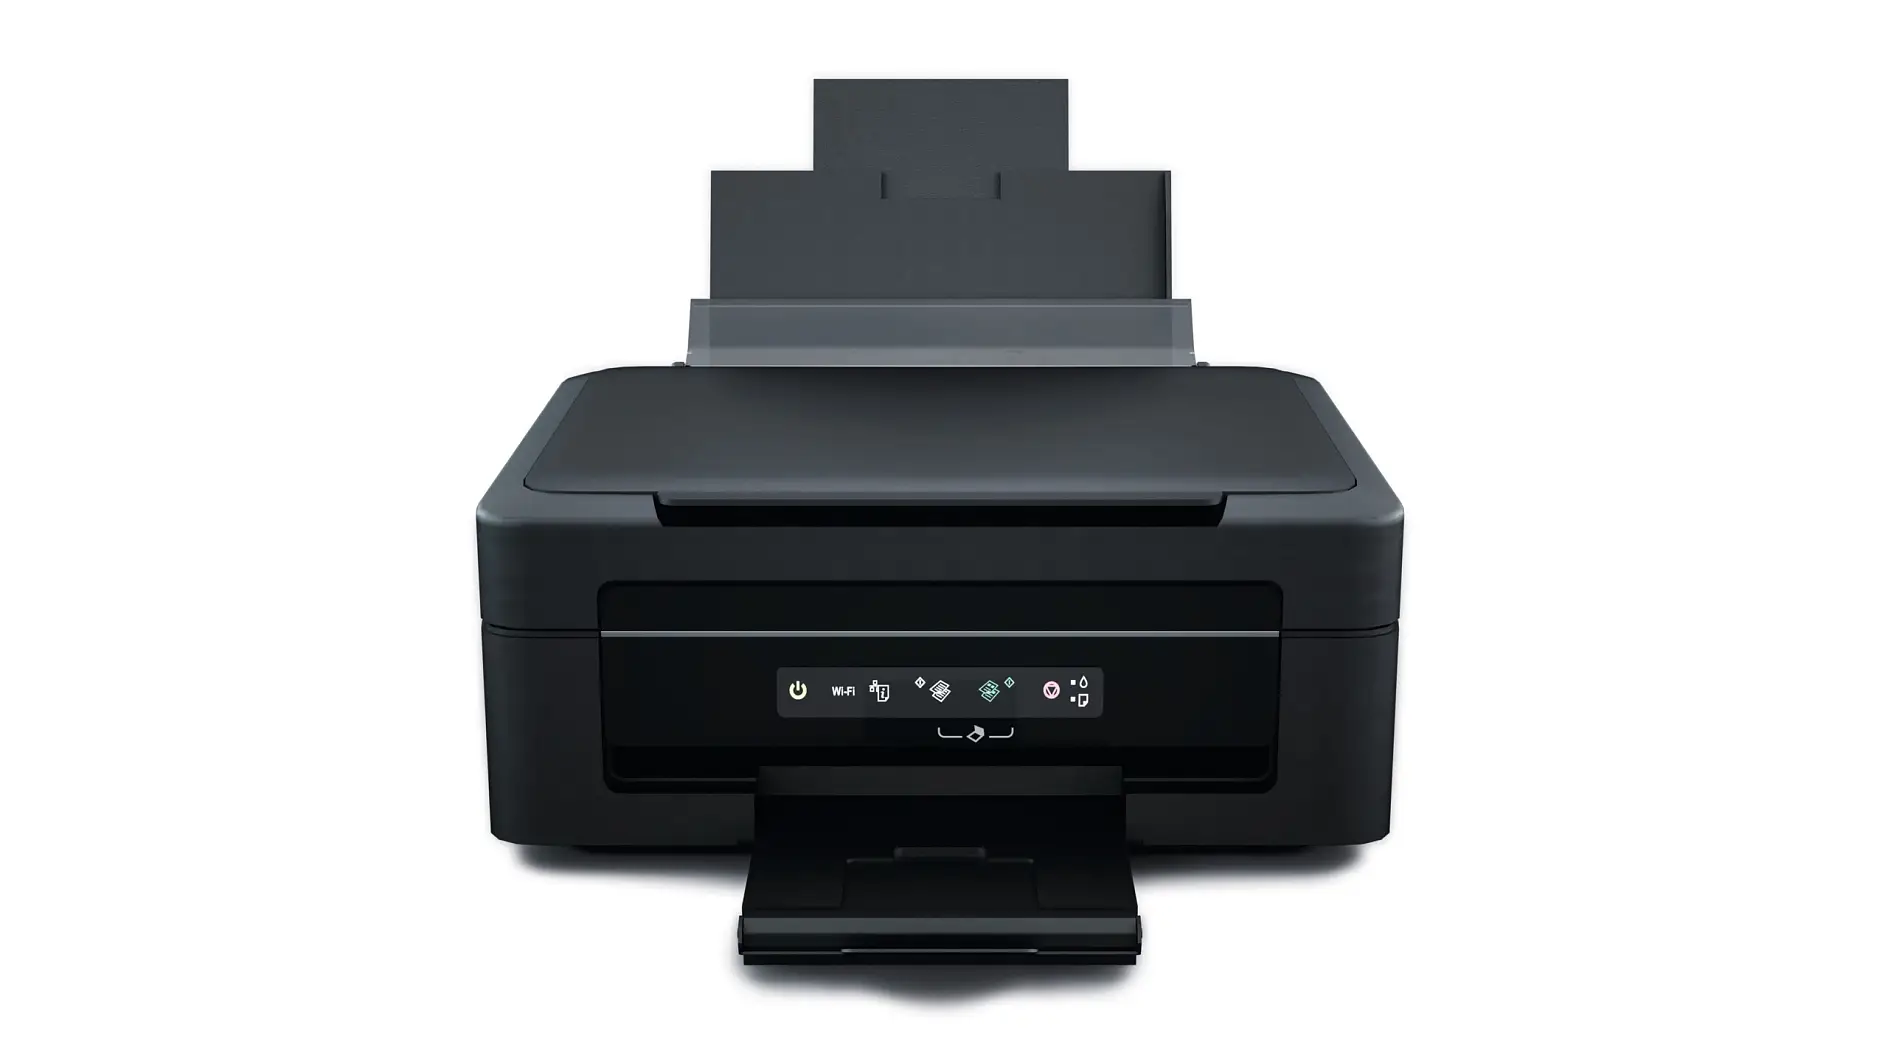 Daudzfunkcionālajiem printeriem var izmantot visdažādākās līmlentes ikvienai vajadzībai.